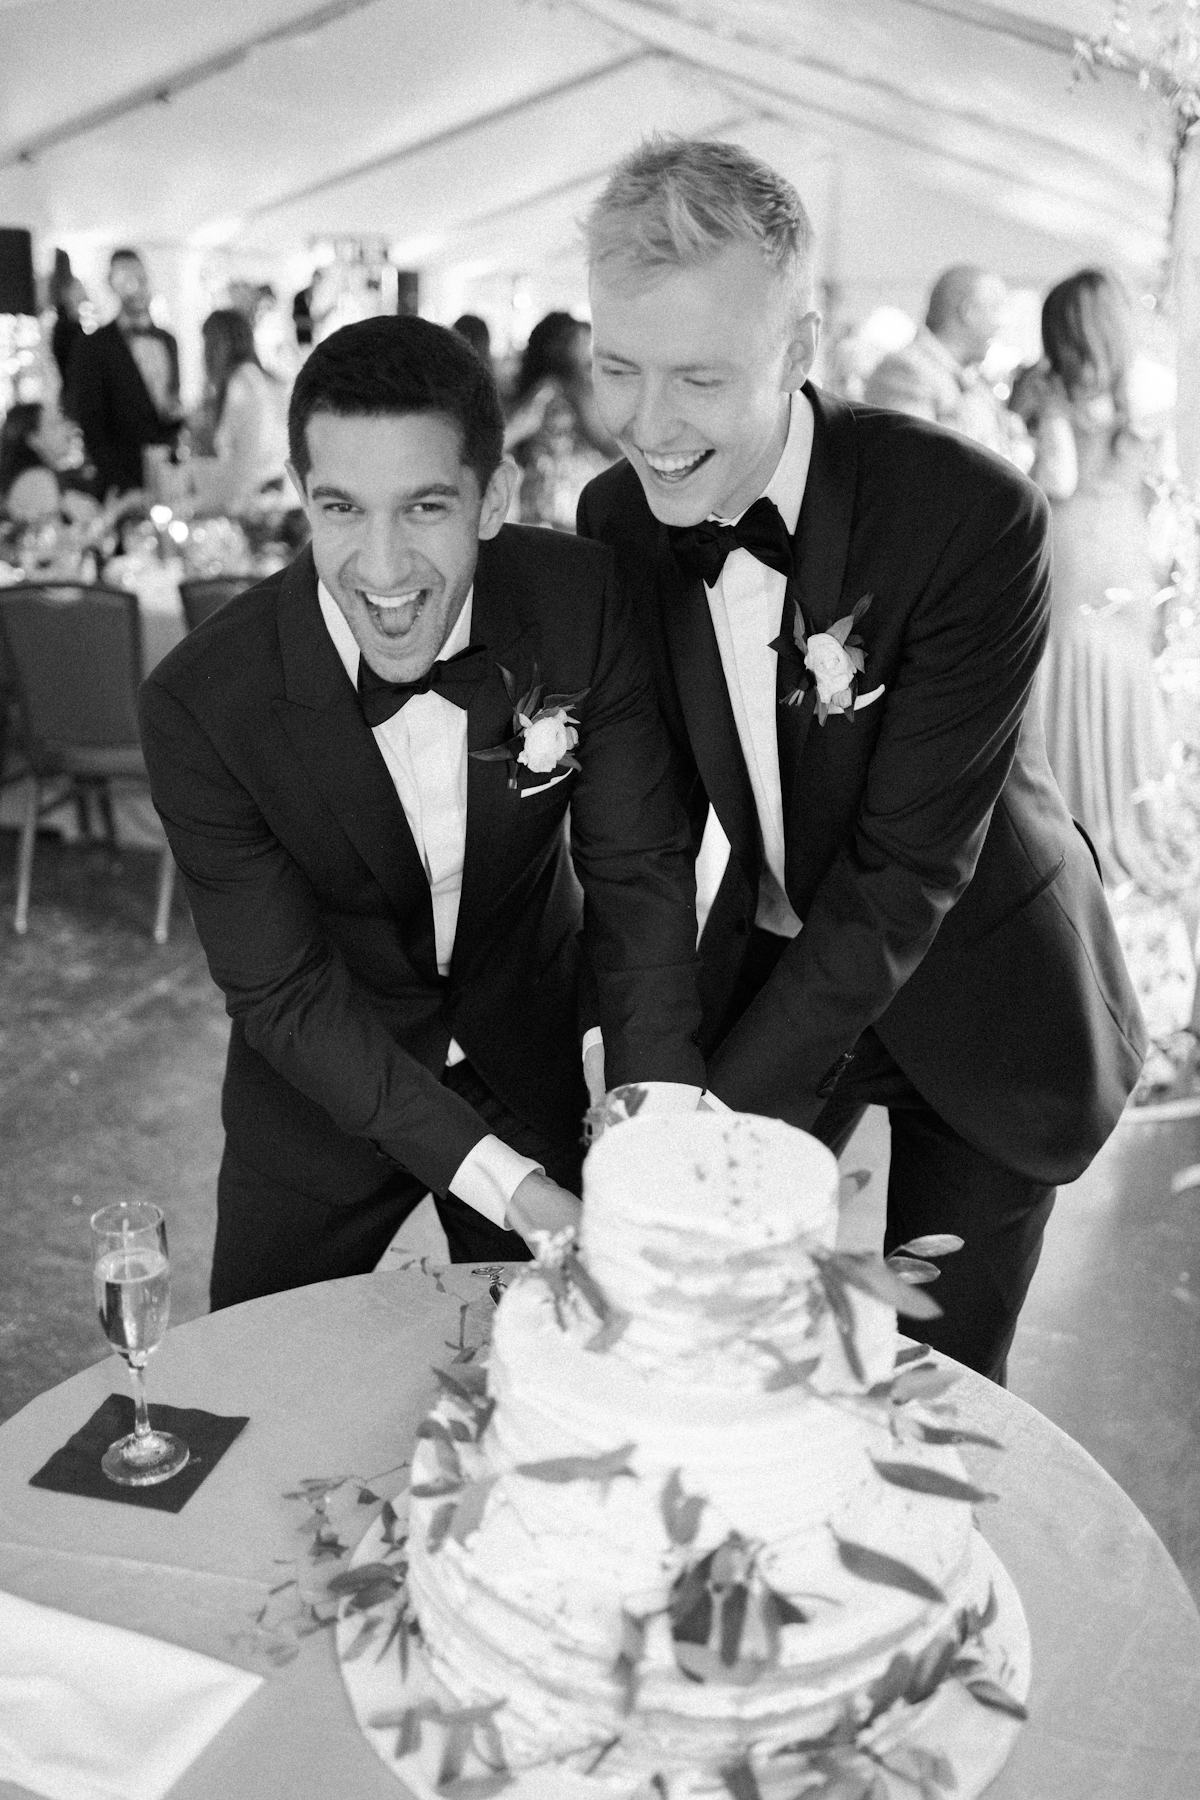 LGBTQ Pride wedding cake cutting